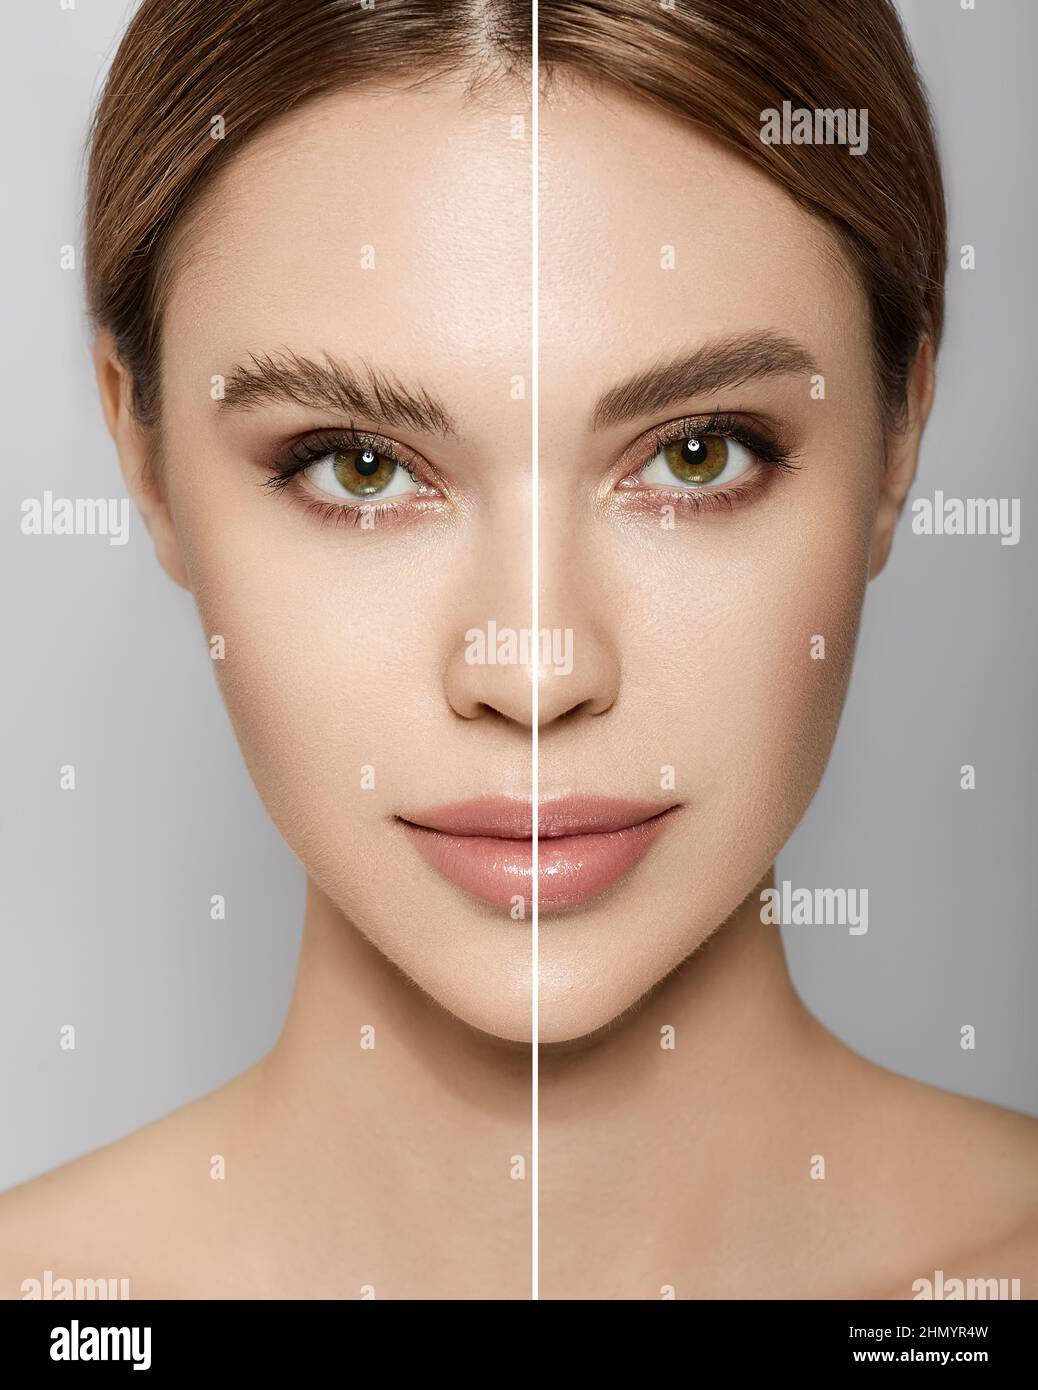 Visage de femme avant et après le style de sourcil, collage sur fond gris. Forme des sourcils avant et après le toilettage Banque D'Images